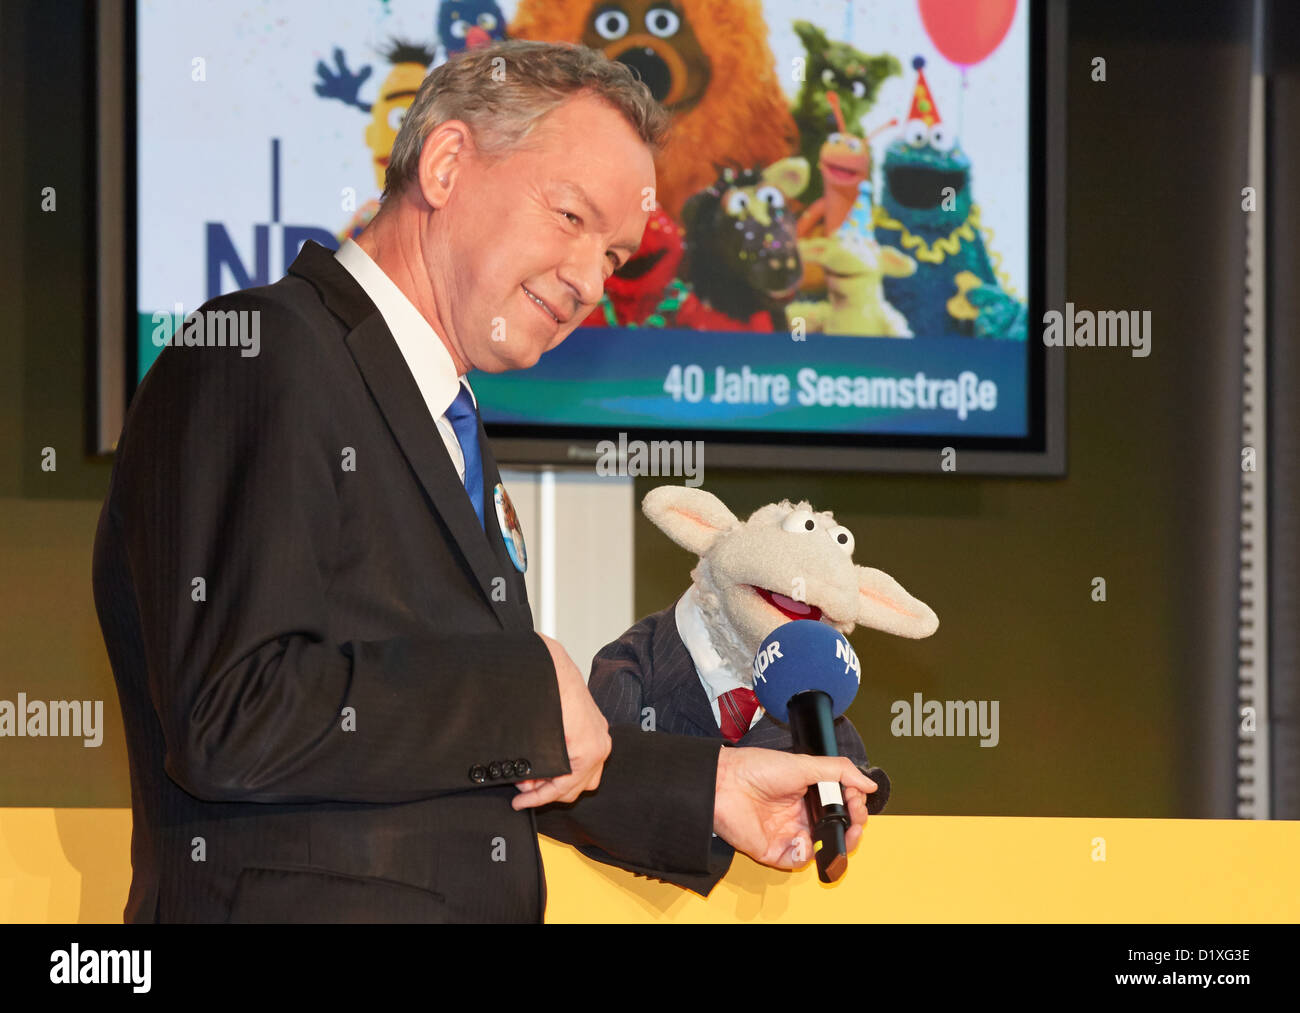 Deutsch Sesame Street Muppet wolle die Reporter Schafe und NDR-Intendant  Lutz Marmor posieren für Fotos während einer Pressekonferenz am 40.  Jahrestag der Sesam-Straße in Hamburg, Deutschland, 7. Januar 2013.  Kinder-und Jugendfernsehserie Uraufführung